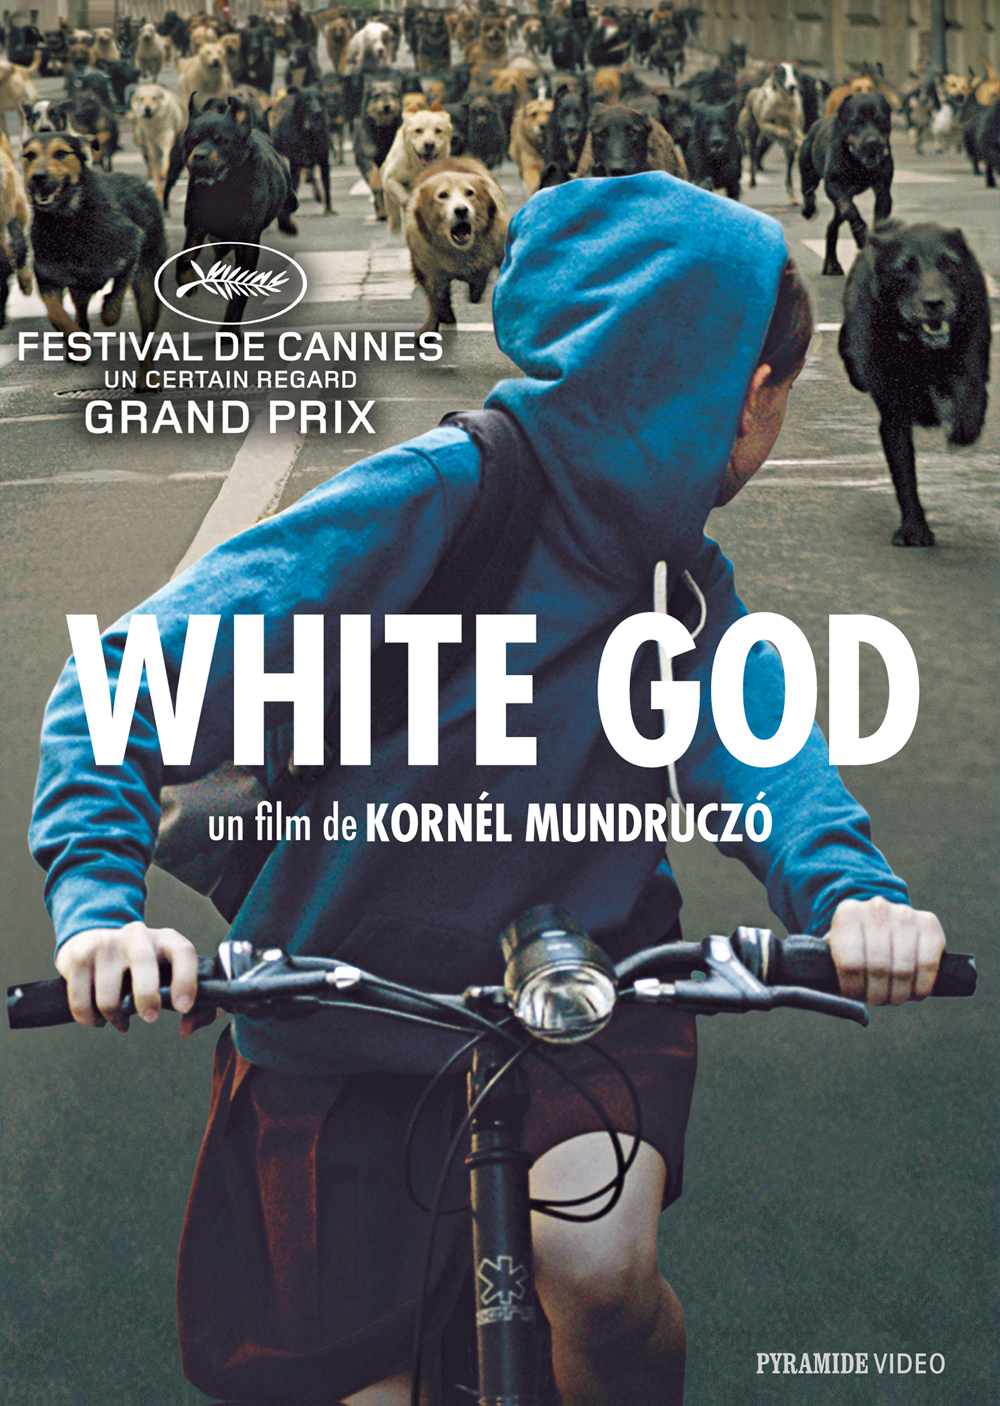 White God en DVD le 15 avril 2015